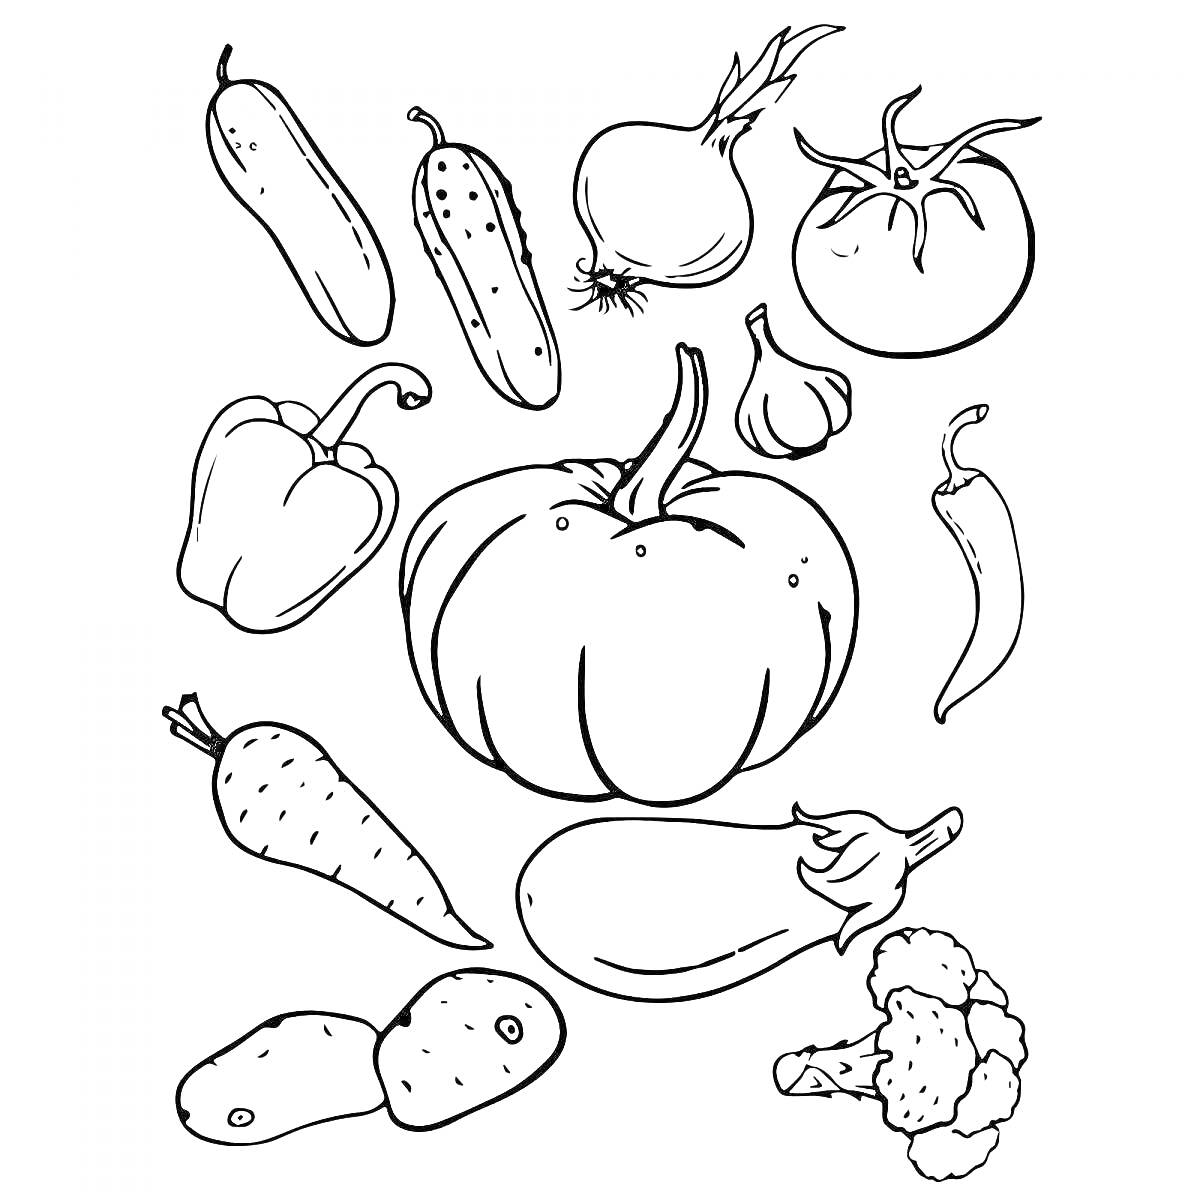 Раскраска с овощами: кабачок, огурец, лук, помидор, перец, тыква, чеснок, морковь, баклажан, картофель, брокколи.